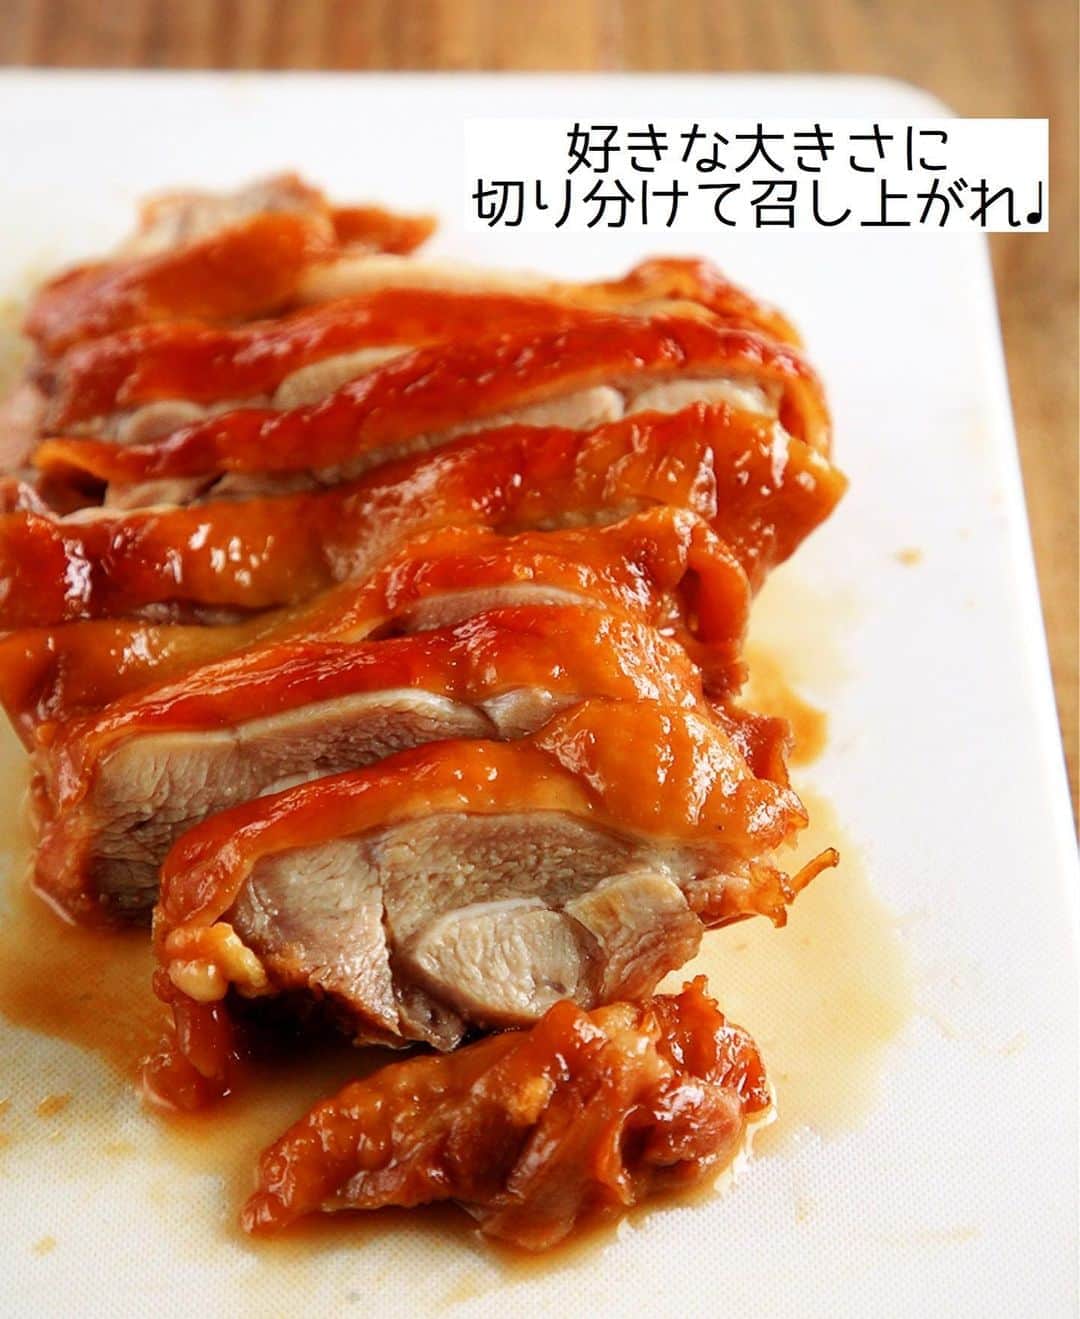 Mizuki【料理ブロガー・簡単レシピ】さんのインスタグラム写真 - (Mizuki【料理ブロガー・簡単レシピ】Instagram)「・﻿ 【レシピ】ーーーーーーーーーーー﻿ ♡鶏肉の中華風ほったらかし煮♡﻿ ーーーーーーーーーーーーーーーー﻿ ﻿ ﻿ ﻿  おはようございます(*^^*)﻿ ﻿ 今日ご紹介させていただくのは﻿ ［鶏肉の中華風ほったらかし煮］﻿ お鍋に調味料と鶏肉を入れたら﻿ ''いじらず触らず煮るだけ''の﻿ 超〜簡単レシピです(*´艸`)﻿ ﻿ ほったらかしで煮るだけなのに﻿ 味も照りも抜群に仕上がりますよ♡﻿ これとってもおすすめなので﻿ 是非お試し下さいね(*^^*)﻿ ﻿ ＊【#今どき和食 】P.24掲載﻿ 〈鶏肉のほったらかししょうゆ煮〉の﻿ アレンジレシピです♡IGTVに保存済☆﻿ ﻿ ﻿ ﻿ ーーーーーーーーーーーーーーーーーーーー﻿ 【2人分】﻿ 鶏もも肉...大1枚(300g)﻿ ●酒...80ml﻿ ●砂糖・醤油・オイスターソース...各大1﻿ ●生姜チューブ...3cm﻿ 白髪ねぎ・レタス...各適量﻿ ﻿ 1.小さめの鍋に●を入れ、鶏肉を皮目を下にして加えて中火にかける。煮立ったらフタをし、弱めの中火で12分煮る。火を止めてそのまま5分置く。﻿ 2.食べやすい大きさに切り、白髪ねぎ、レタスと器に盛り合わせる。﻿ ーーーーーーーーーーーーーーーーーーーー﻿ ﻿ ﻿ ﻿ 《ポイント》﻿ ♦︎小さめの鍋を使用して下さい♩(私は16cmの鍋を使用)﻿ ♦︎鶏肉を裏返したりする必要はありません♩﻿ ﻿ ﻿ ﻿ ﻿ ﻿ ﻿ ＿＿＿＿＿＿＿＿＿＿＿＿＿＿＿＿＿＿＿﻿ 📕6刷重版しました📕﻿ 簡単・時短！ 毎日のごはんがラクになる﻿ ✨🦋 【 #Mizukiの今どき和食 】🦋✨﻿ ＿＿＿＿＿＿＿＿＿＿＿＿＿＿＿＿＿＿＿﻿ なるべく少ない材料で﻿ 手間も時間も省きながら﻿ 簡単にできるおいしい和食レシピ♩﻿ 簡単に失敗なくマスターできる一冊で﻿ もっと気軽に、カジュアルに﻿ 和食を楽しんで下さいね(*^^*)﻿ ＿＿＿＿＿＿＿＿＿＿＿＿＿＿＿＿＿＿＿﻿ ﻿ ﻿ ﻿ ﻿ ＿＿＿＿＿＿＿＿＿＿＿＿＿＿＿＿＿﻿ 🎀6刷重版しました🎀﻿ 混ぜて焼くだけ。はじめてでも失敗しない！﻿ 【#ホットケーキミックスのお菓子 】﻿ ﻿ 一冊まるっとホケミスイーツ♩﻿ 普段のおやつから﻿ 特別な日にも使えるレシピを﻿ この一冊に詰め込みました(*^^*)﻿ ホットケーキミックスを使えば﻿ 簡単に本格的なお菓子が作れますよ♡﻿ ＿＿＿＿＿＿＿＿＿＿＿＿＿＿＿＿＿﻿ ﻿ ﻿ ﻿ ⭐️ストーリー、ハイライト、プロフ画面に﻿ 本のURLを貼らせていただいております♩﻿ →(@mizuki_31cafe )﻿ ﻿ ﻿ ﻿ ﻿ ﻿ #鶏肉#ほったらかし煮#照り煮#作り置き#お弁当#Mizuki#簡単レシピ#時短レシピ#節約レシピ#料理#レシピ#フーディーテーブル#マカロニメイト#おうちごはん#デリスタグラマー#料理好きな人と繋がりたい#おうちごはんlover#写真好きな人と繋がりたい#foodpic#cooking#recipe#lin_stagrammer#foodporn#yummy#鶏肉の中華風ほったらかし煮m」8月8日 8時52分 - mizuki_31cafe